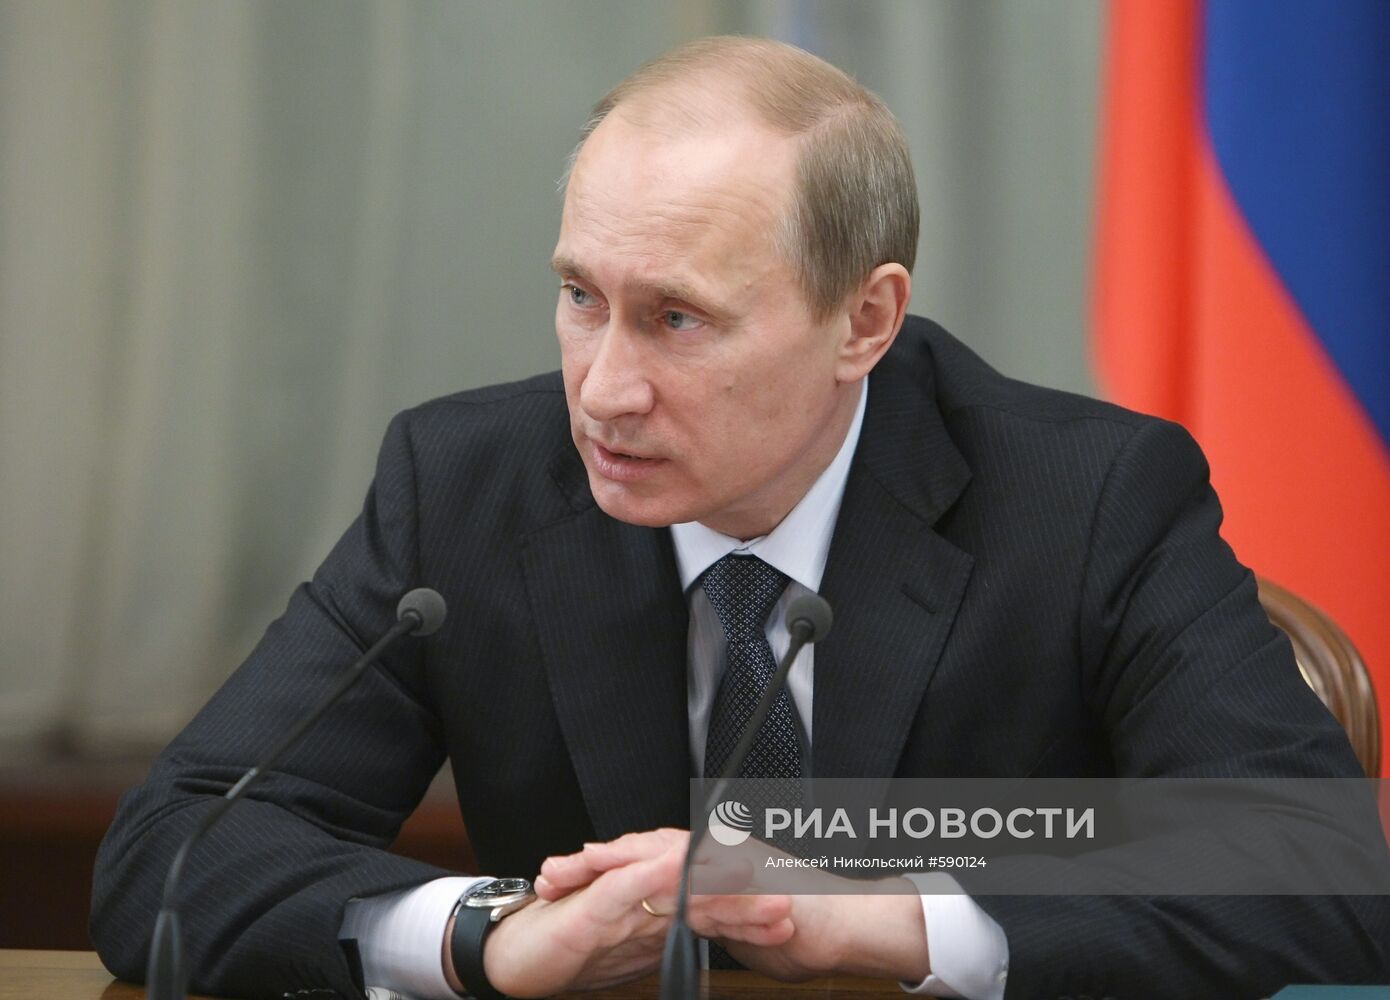 Премьер-министр России Владимир Путин провел заседание в Москве